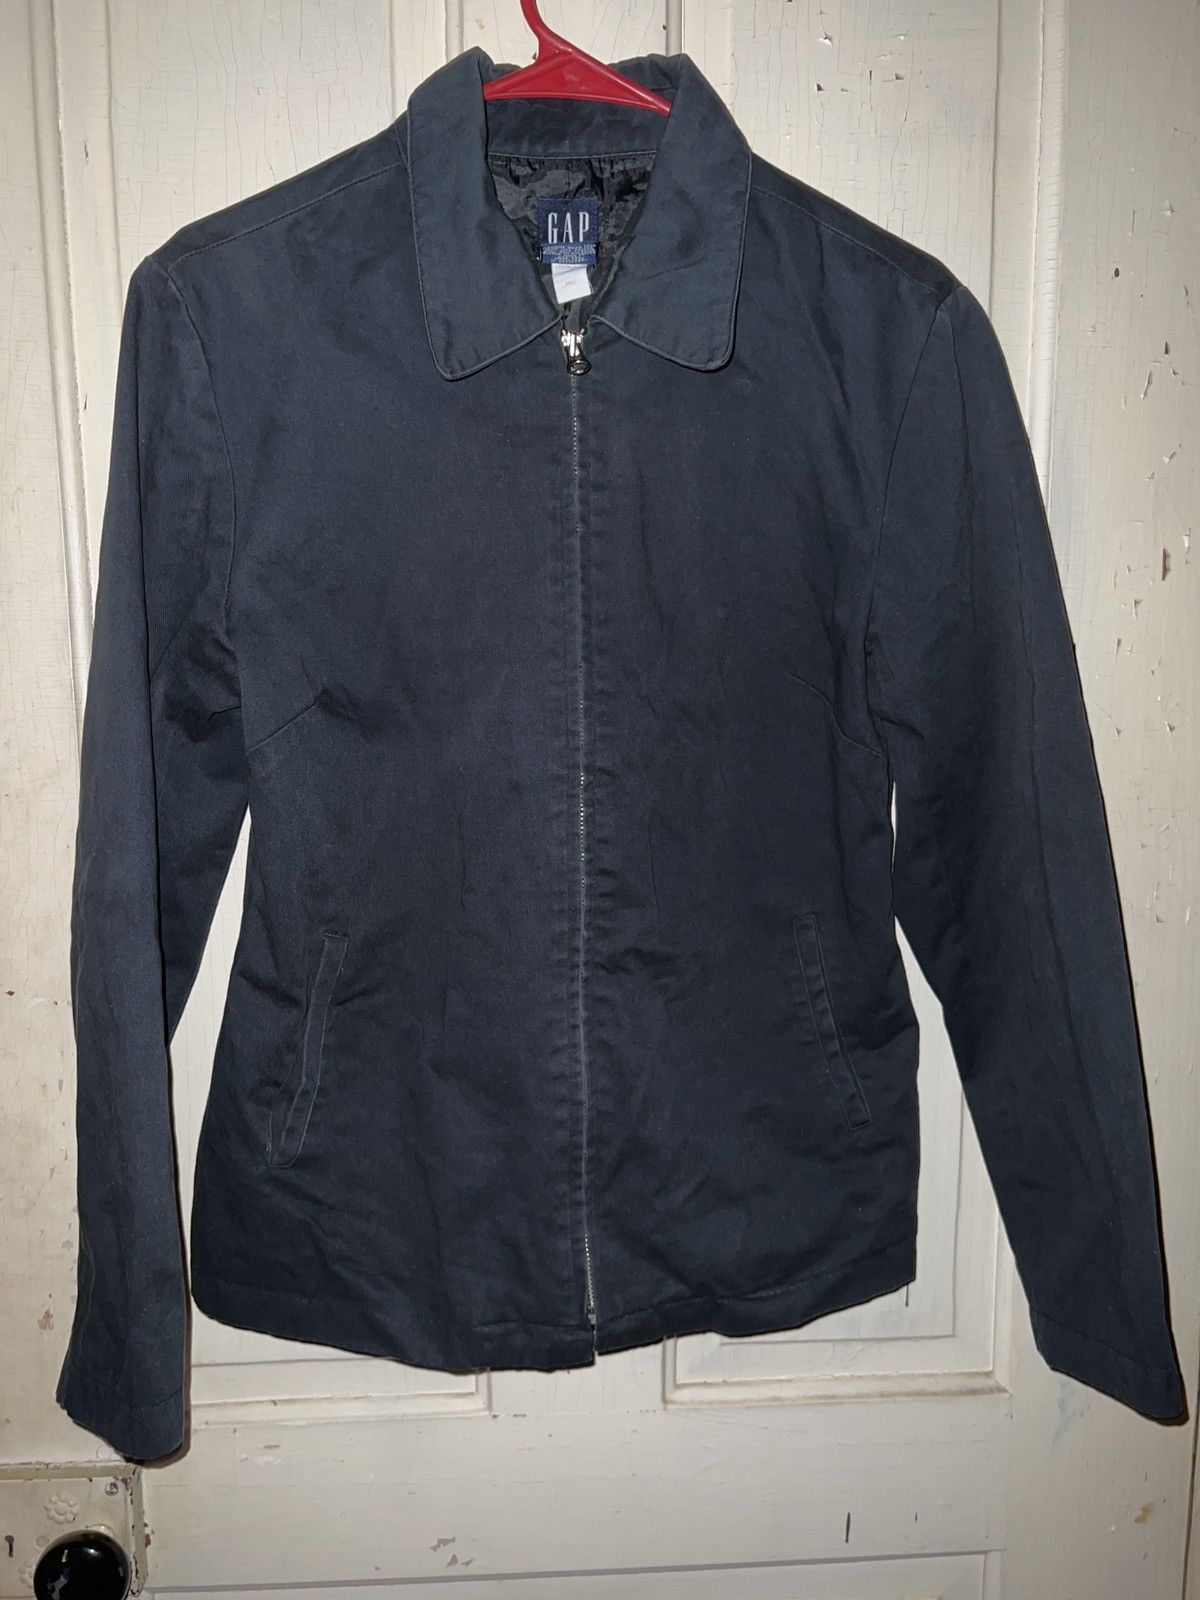 Vintage Gap workwear jacket | Grailed